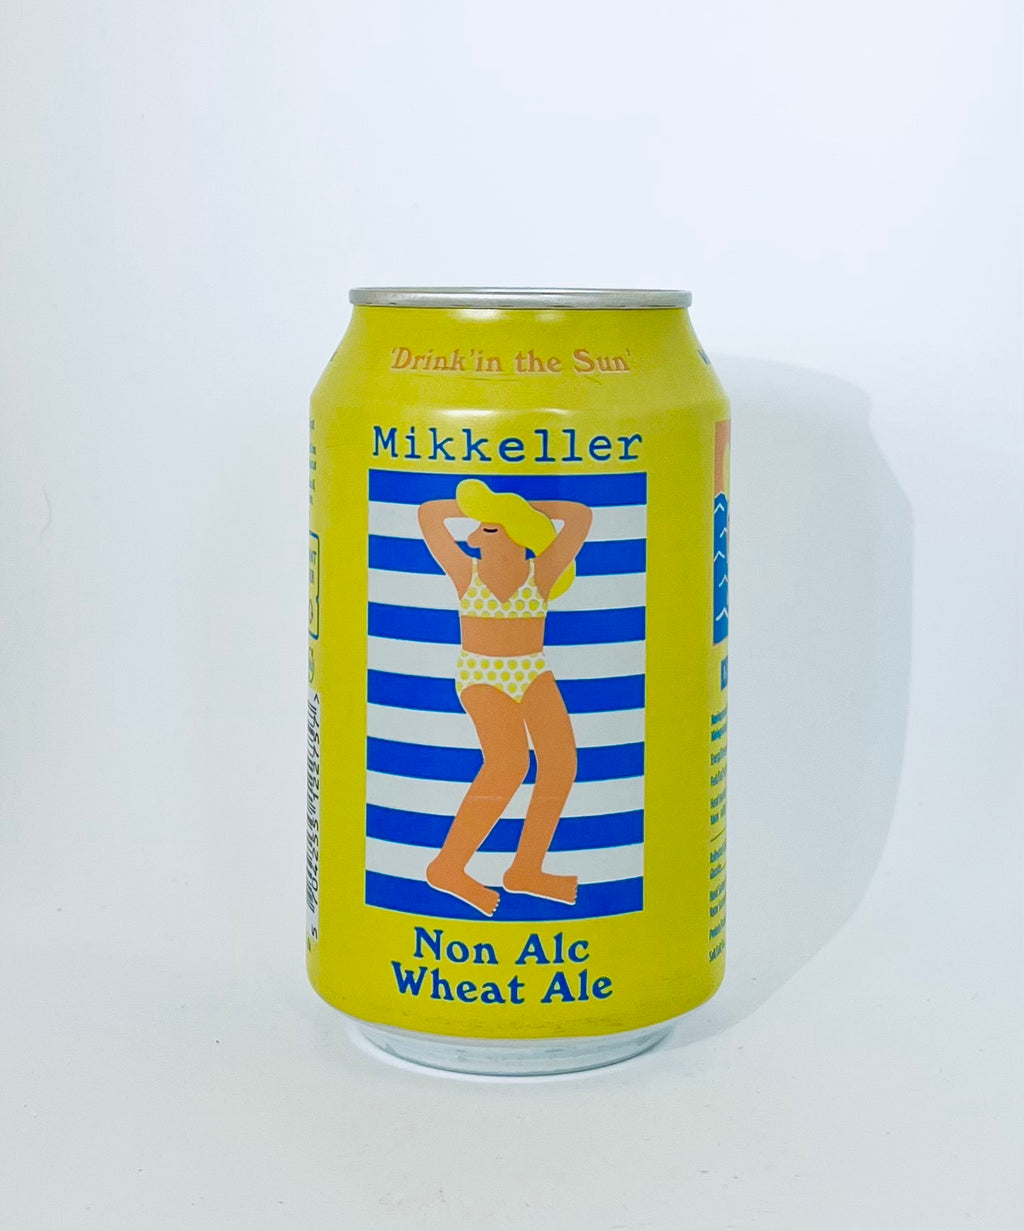 Drink'in The Sun - Wheat Ale - Mikkeller Alkoholfri 0,3%, 33cl (inkl. pant)